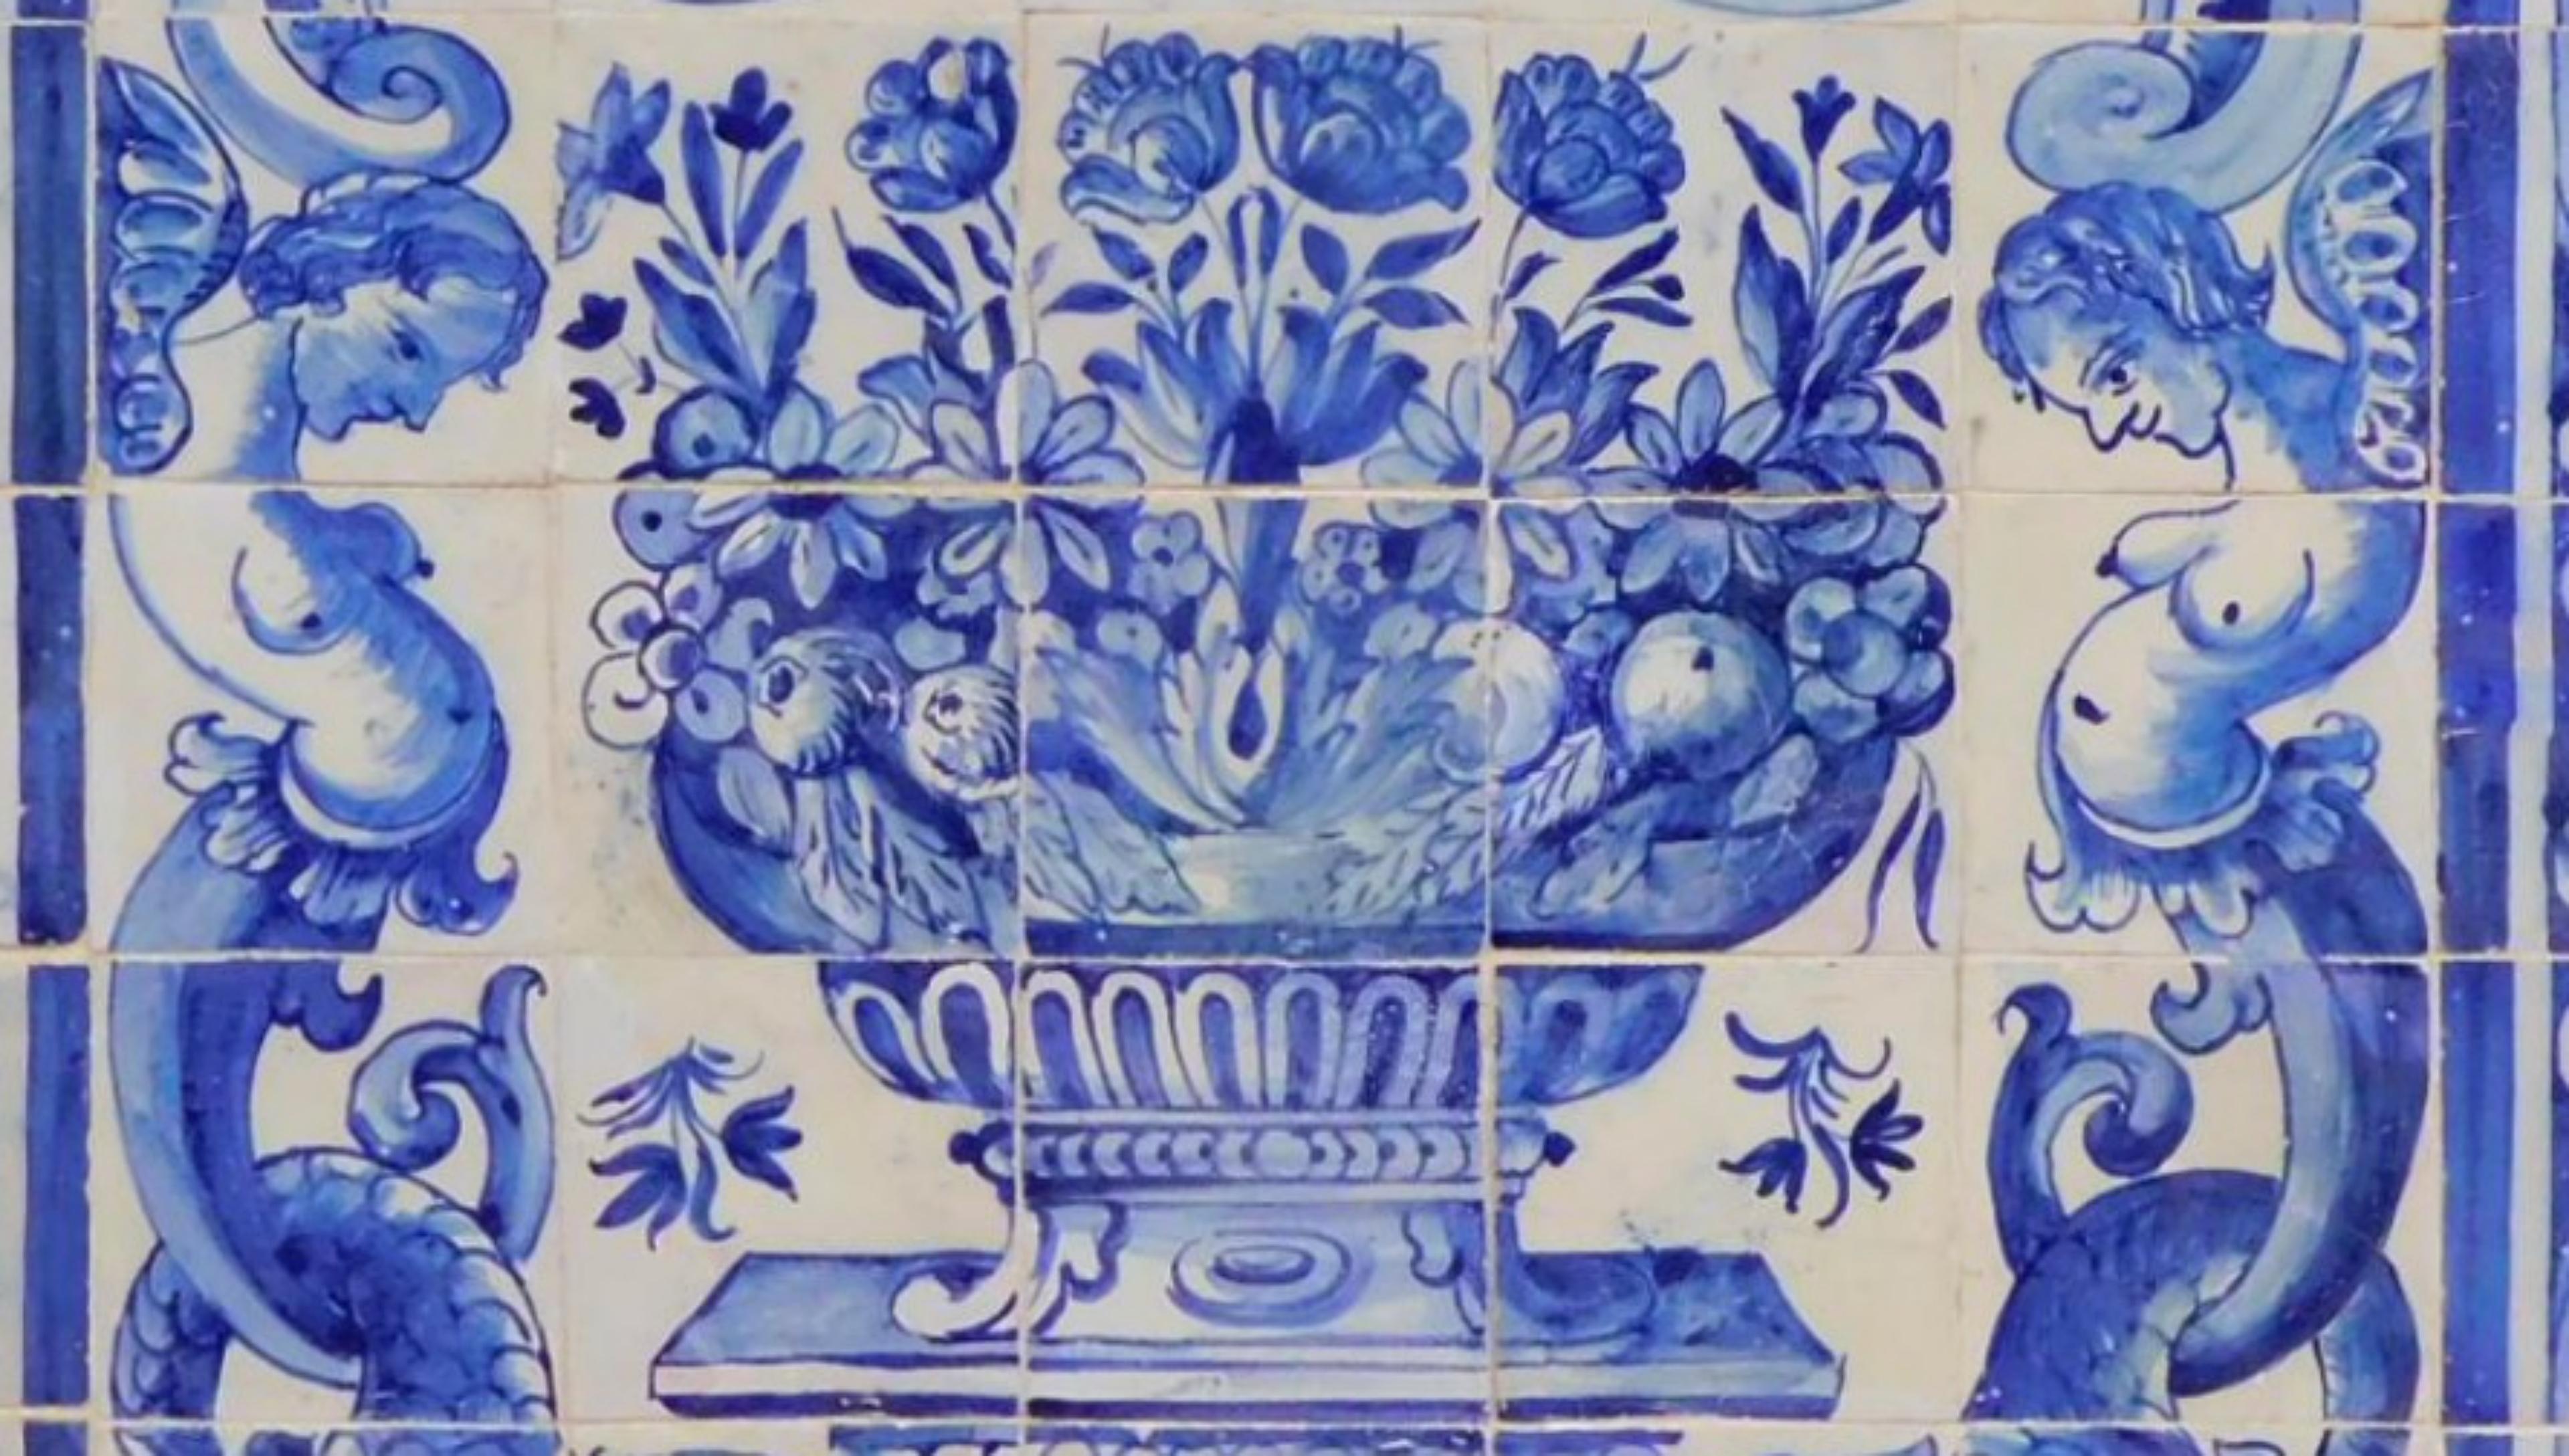 « Vase » portugais du XVIIIe siècle 
Mesures : 126 cm x 126 cm
81 carreaux

Importante note : ce panneau est accompagné des carreaux restaurés du 17ème siècle.
Le panneau est livré comme s'il s'agissait d'un tableau avec un squelette en bois,